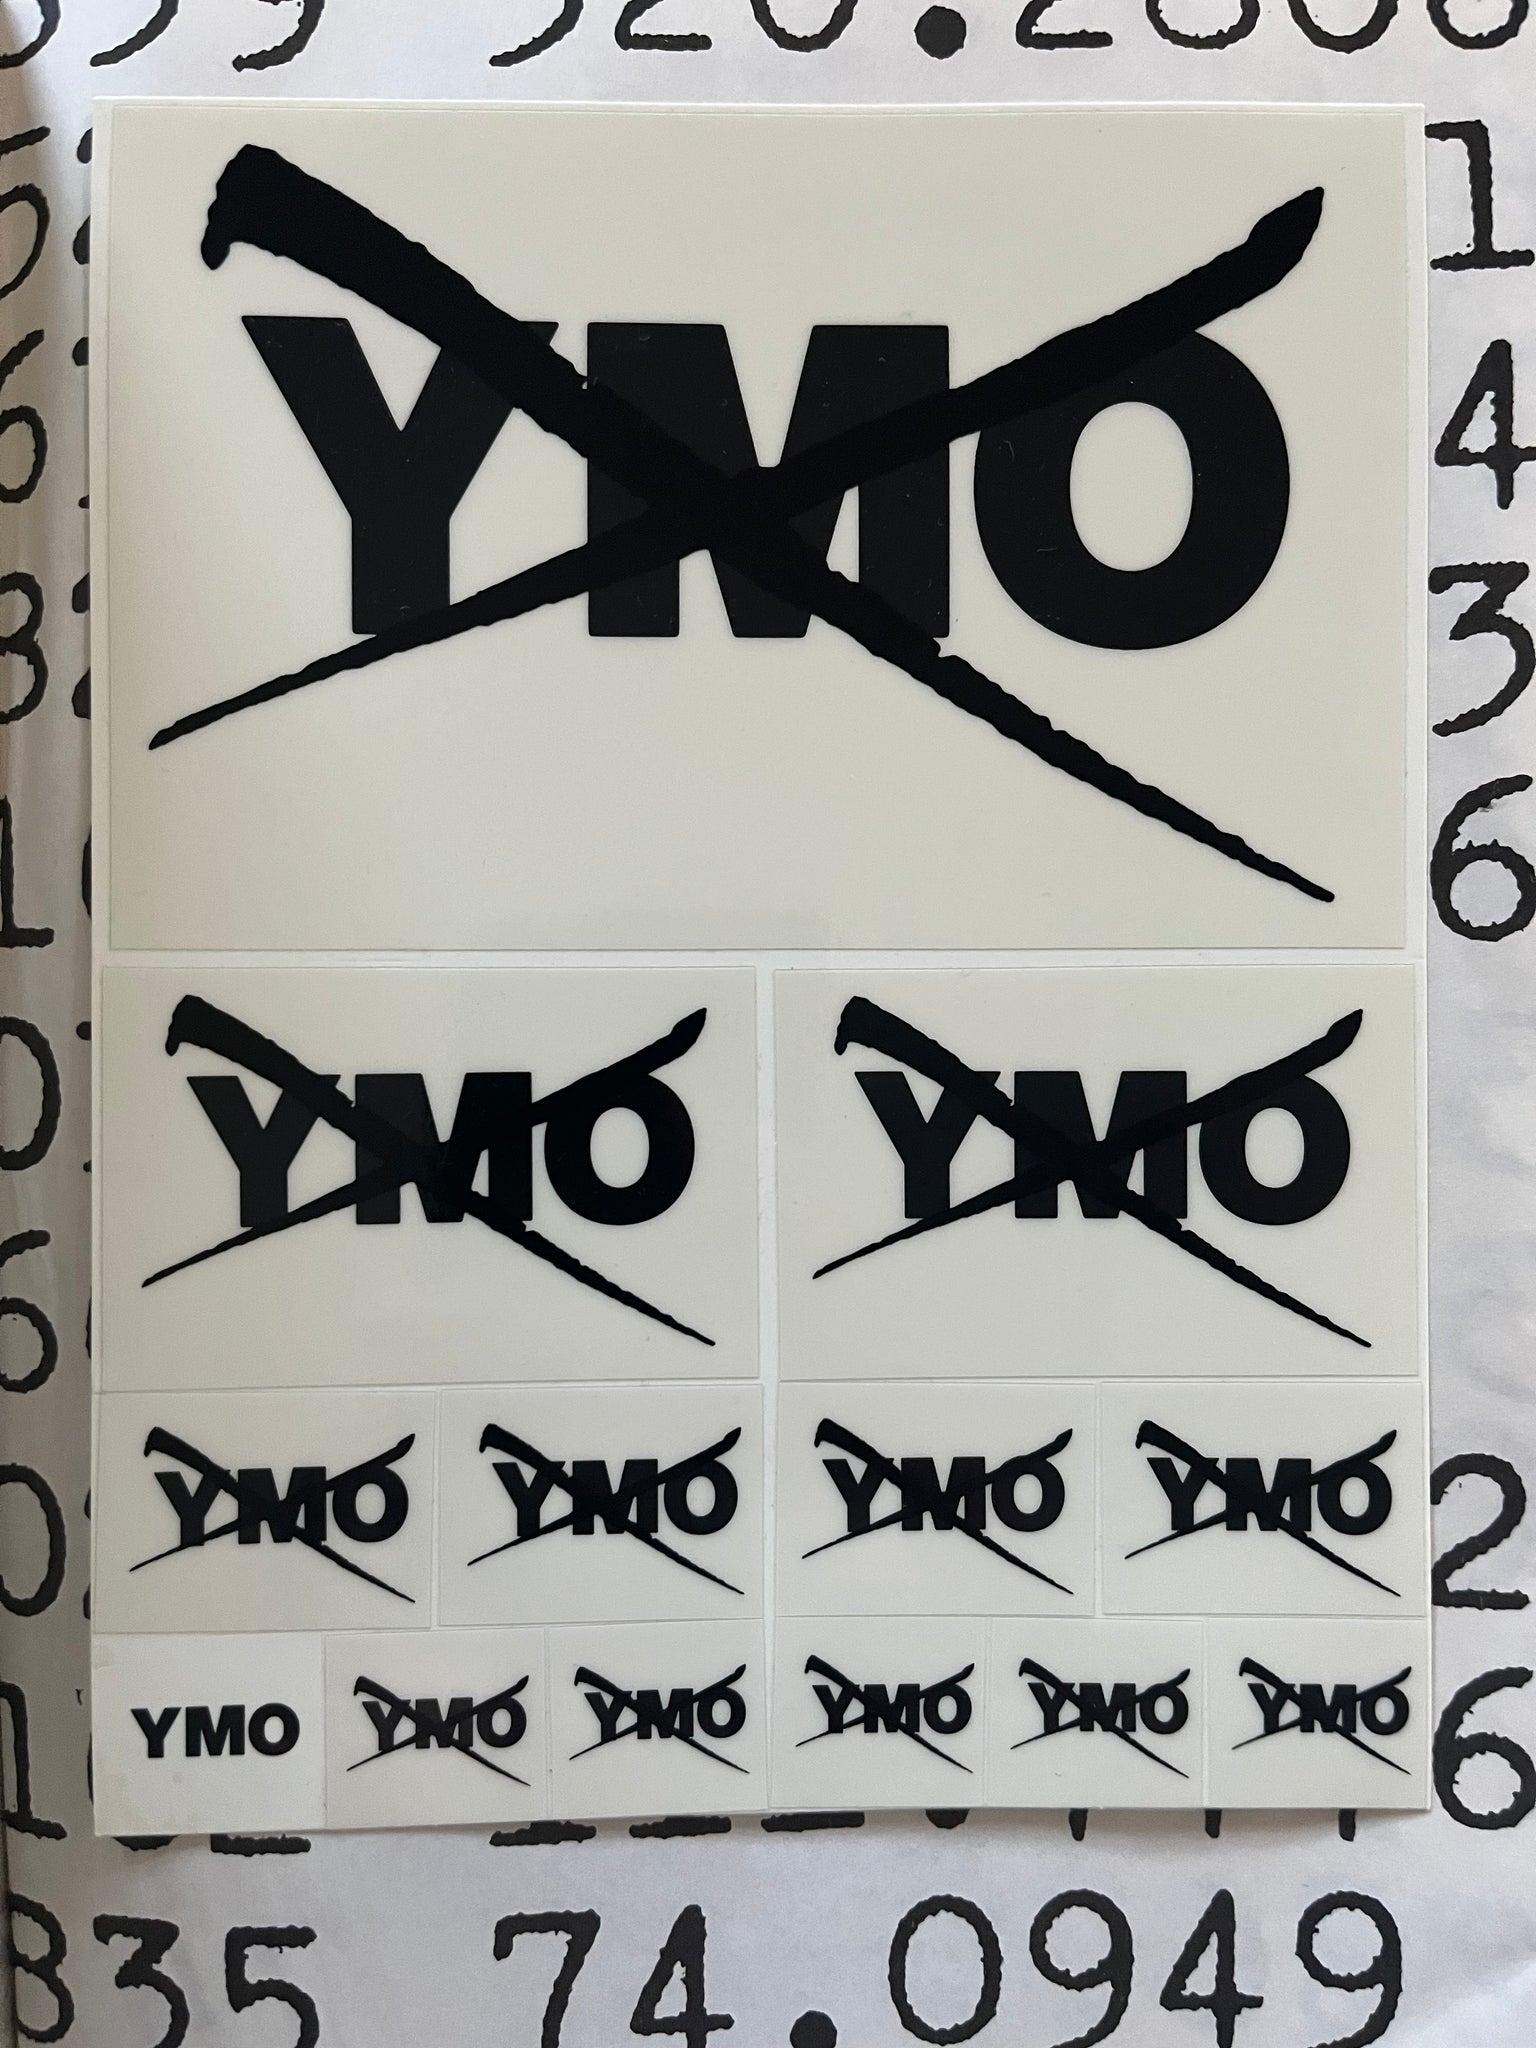 YMO Tokyo Dome